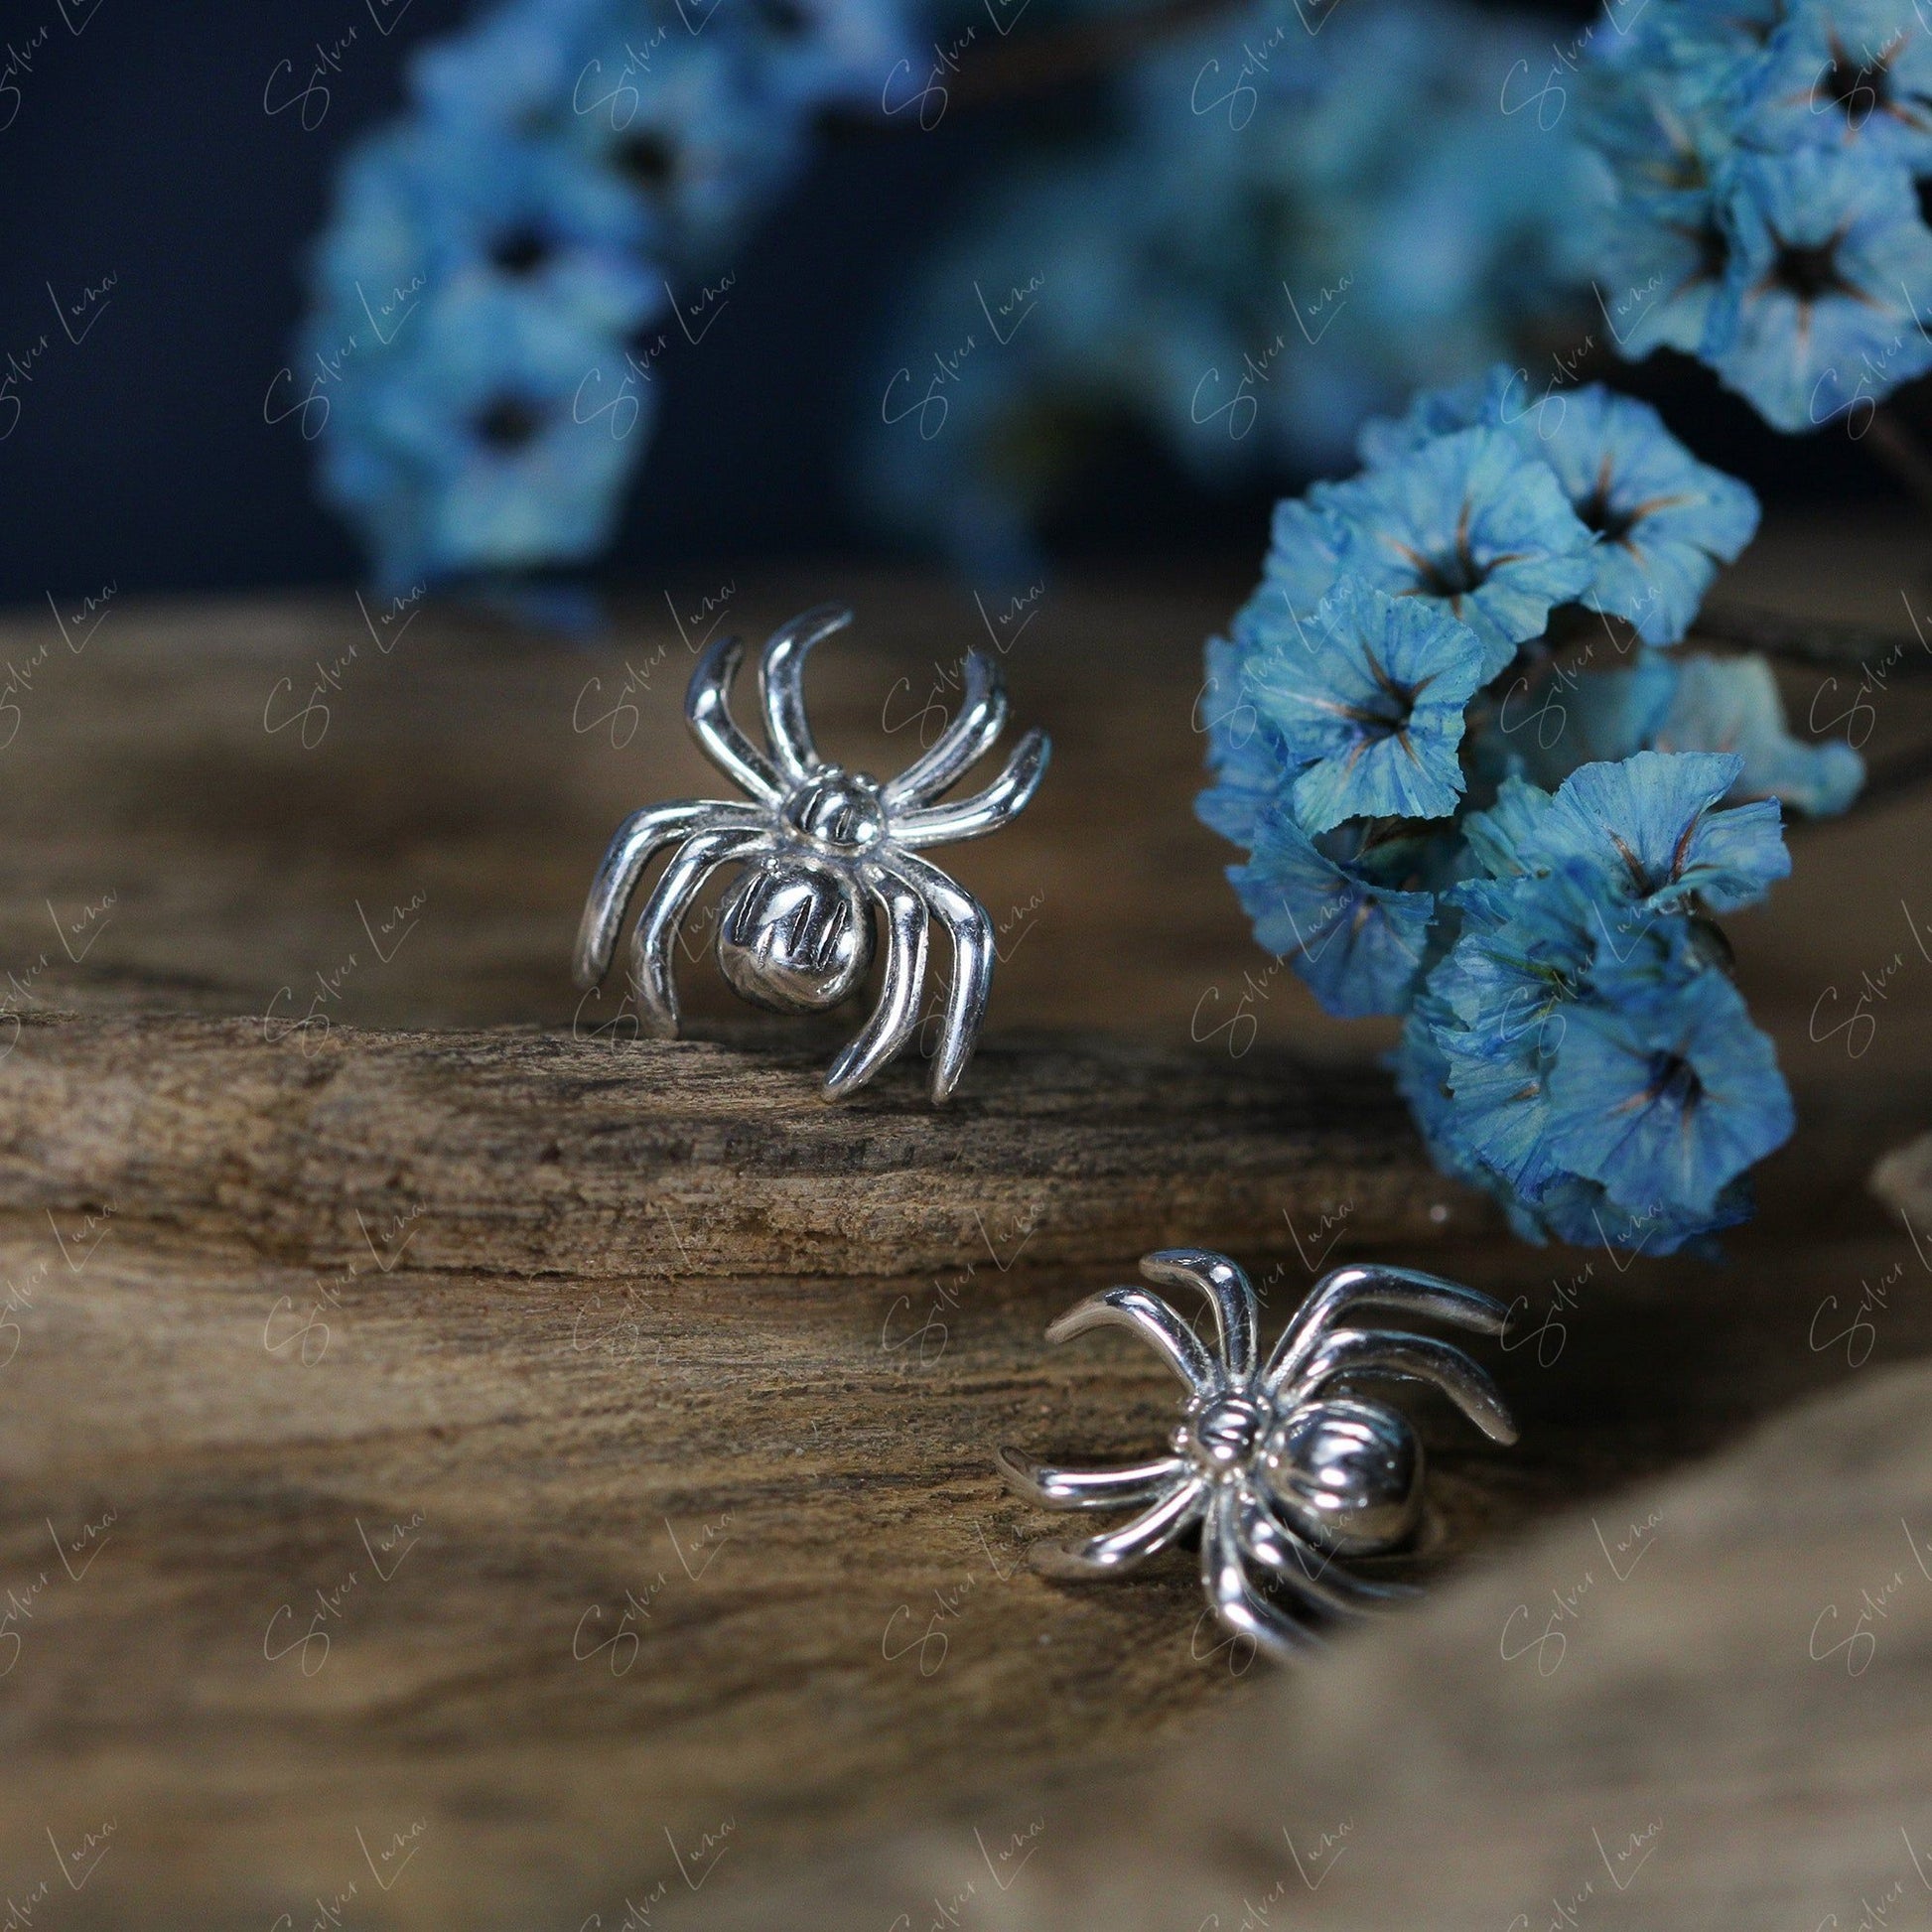 spider stud earrings